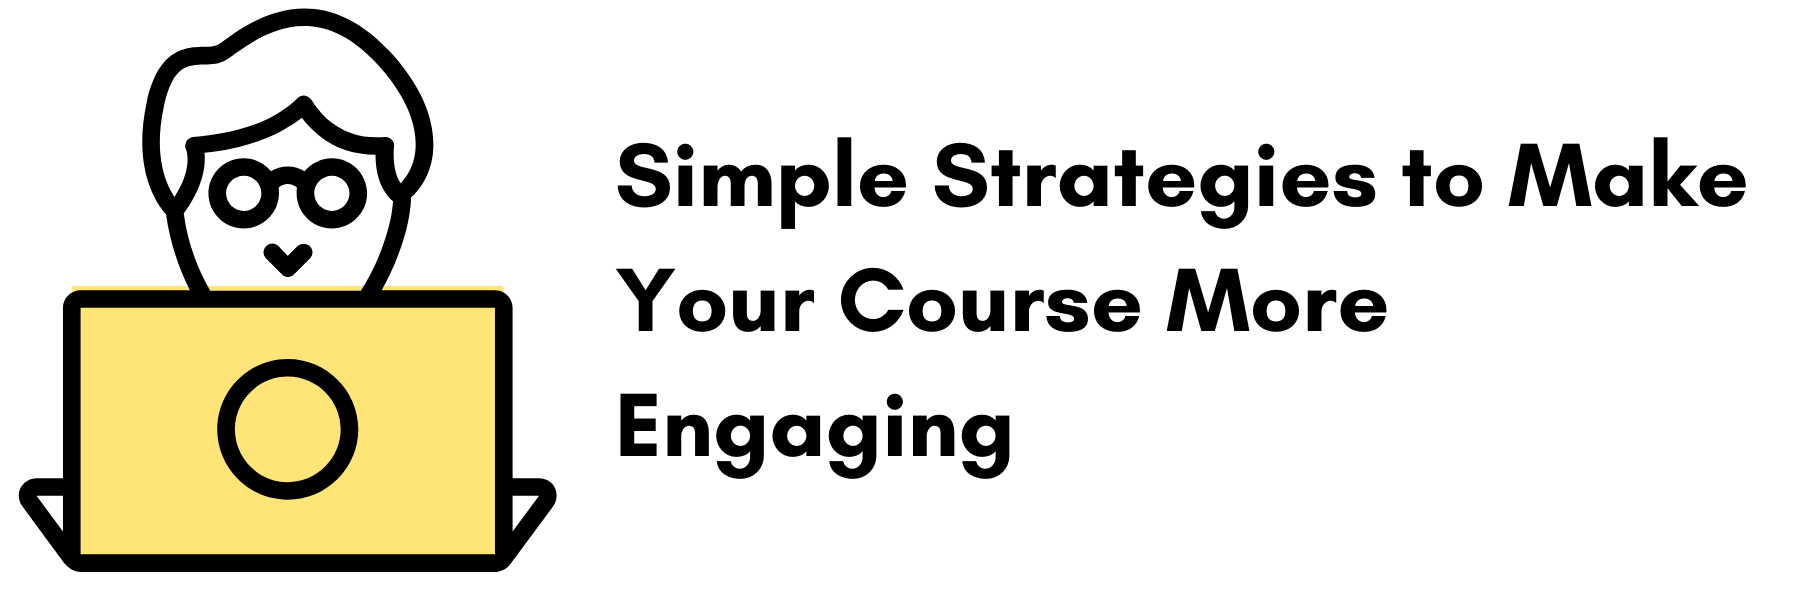 让你的课程更吸引人的简单策略